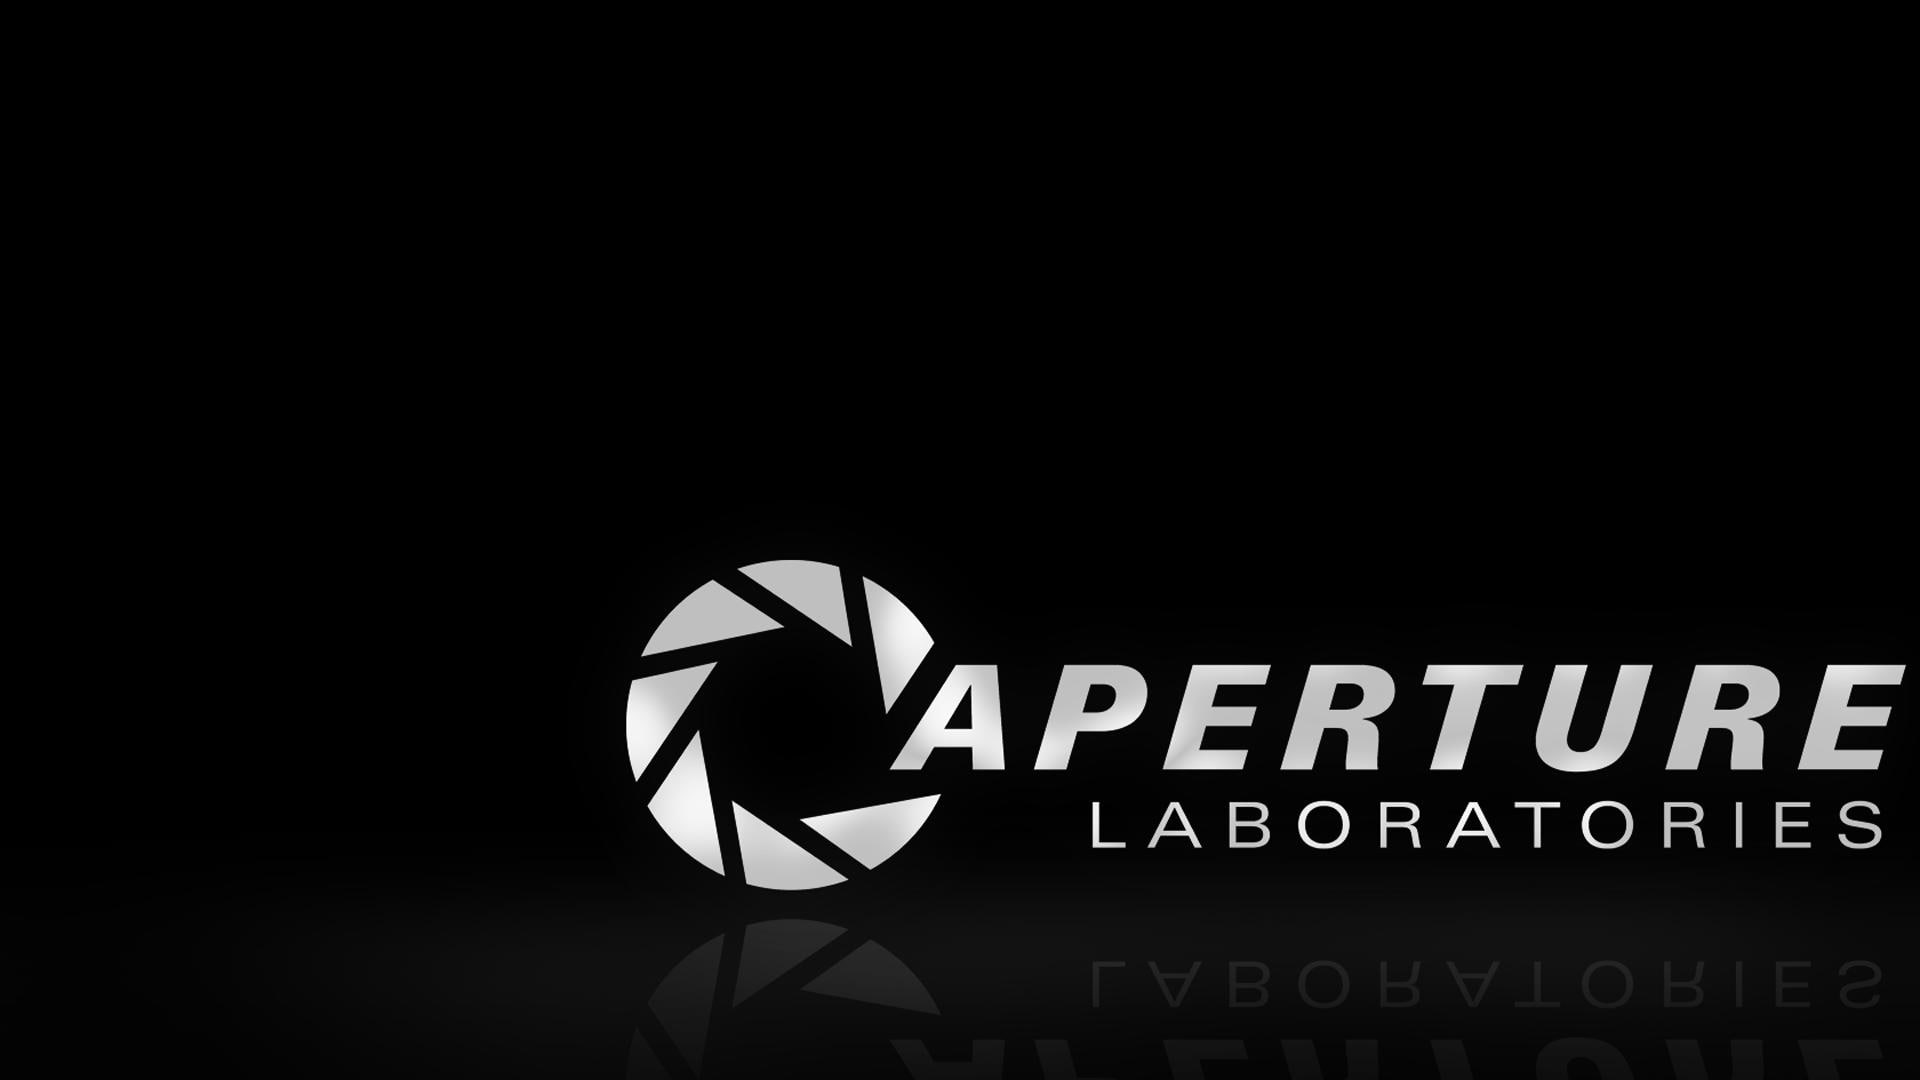 Aperture Science B/W HD, caperture laboratories, bw